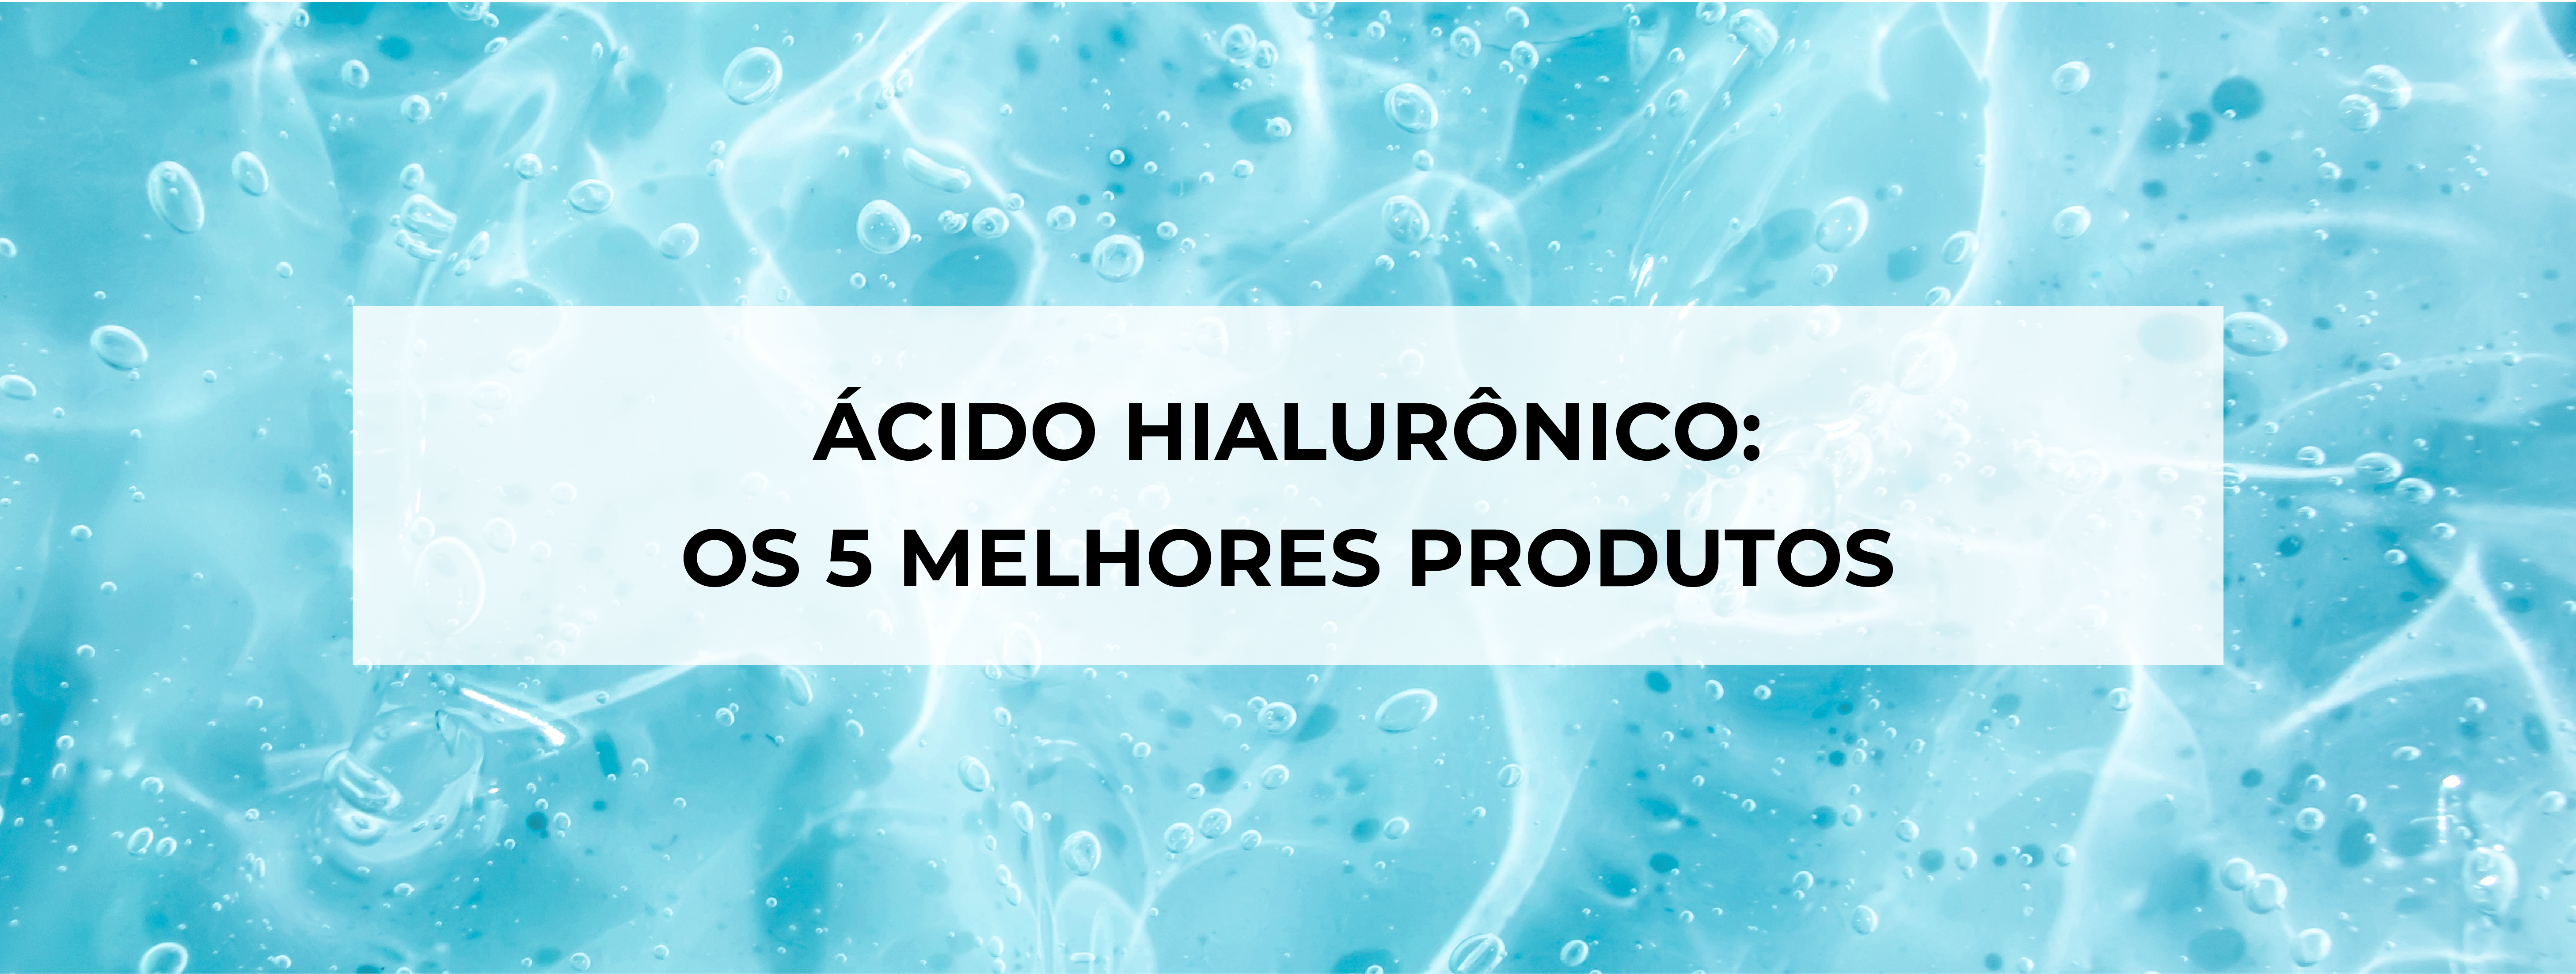 Ácido hialurônico: 5 melhores produtos